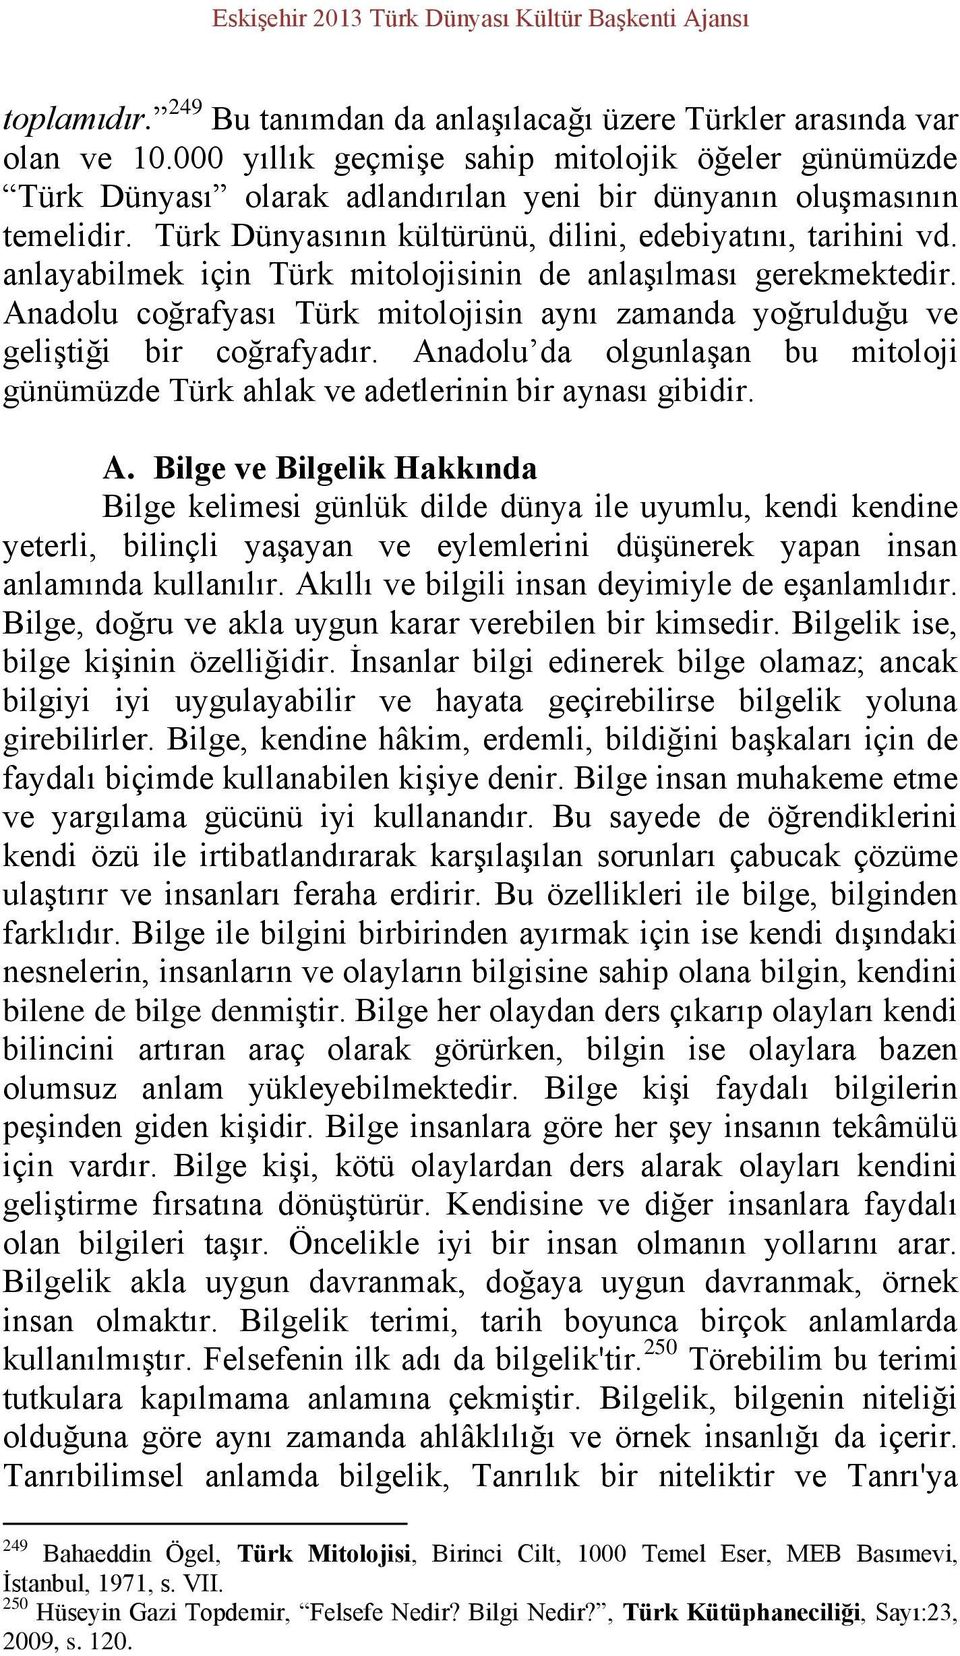 anlayabilmek için Türk mitolojisinin de anlaşılması gerekmektedir. Anadolu coğrafyası Türk mitolojisin aynı zamanda yoğrulduğu ve geliştiği bir coğrafyadır.